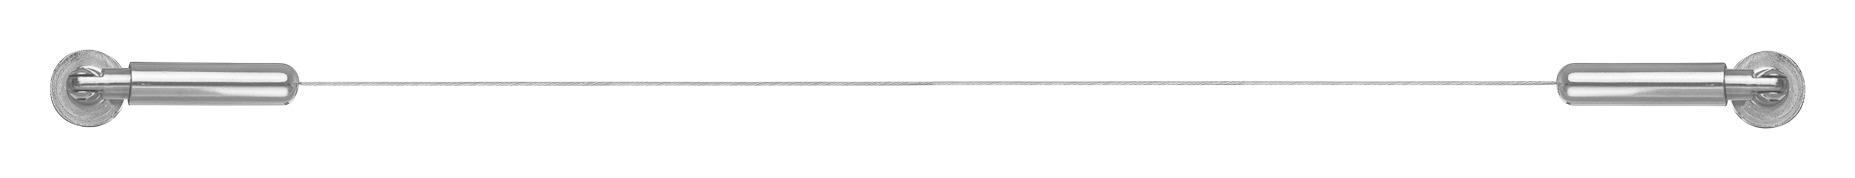 Seilspanngarnitur Seilspanngarnitur - Edelstahloptik